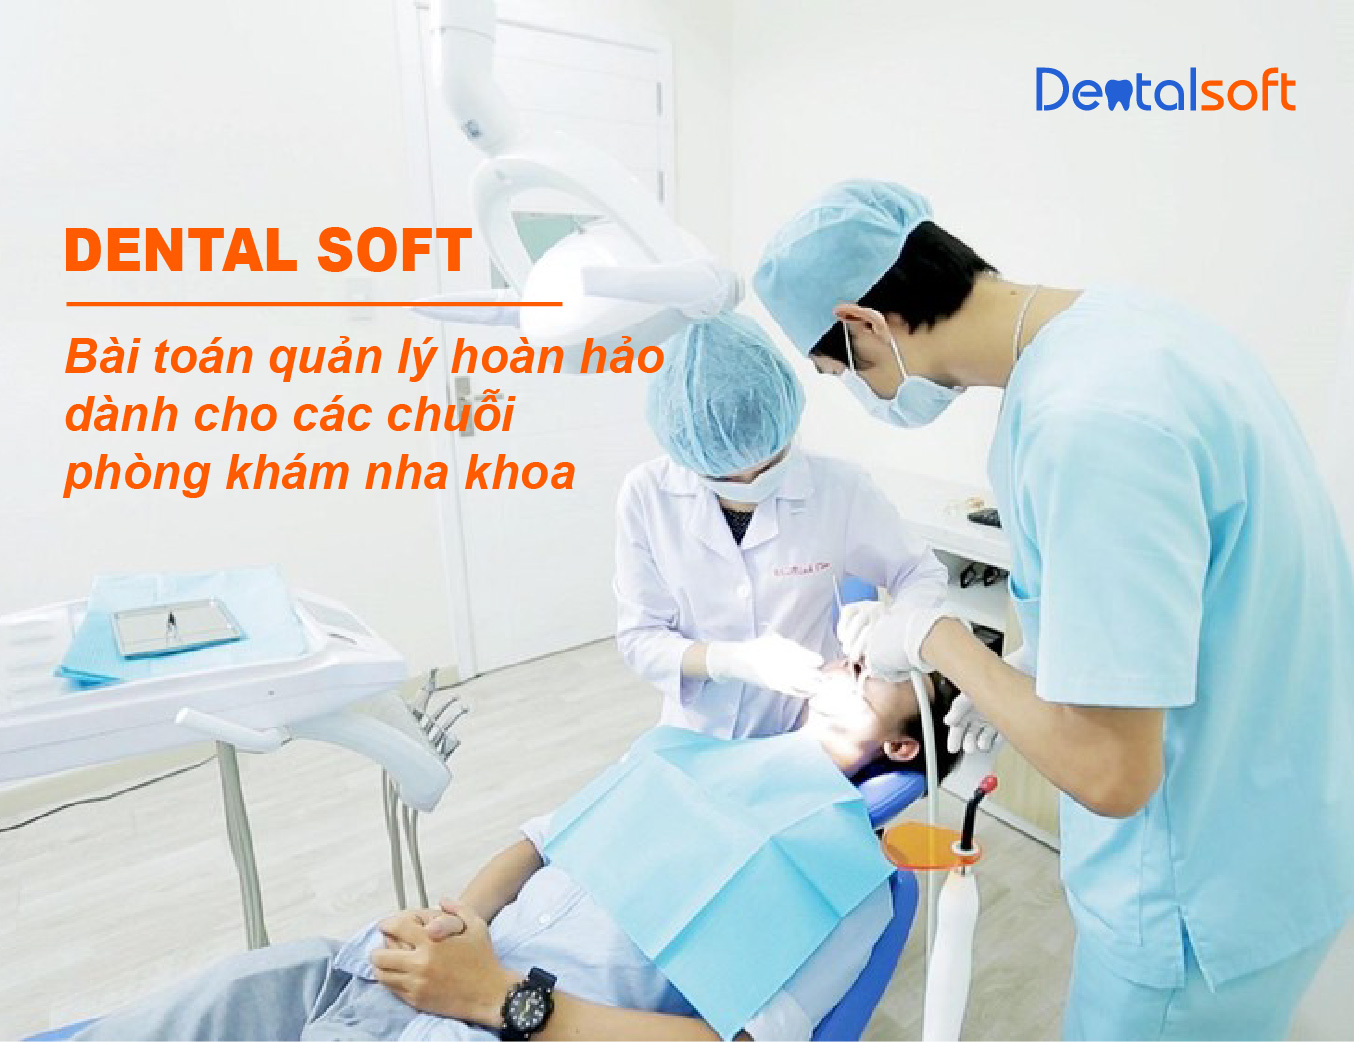 Nha khoa OSMILE tối ưu bộ máy quản lý chuỗi phòng khám nha khoa bằng phần mềm Dental Soft của DIP